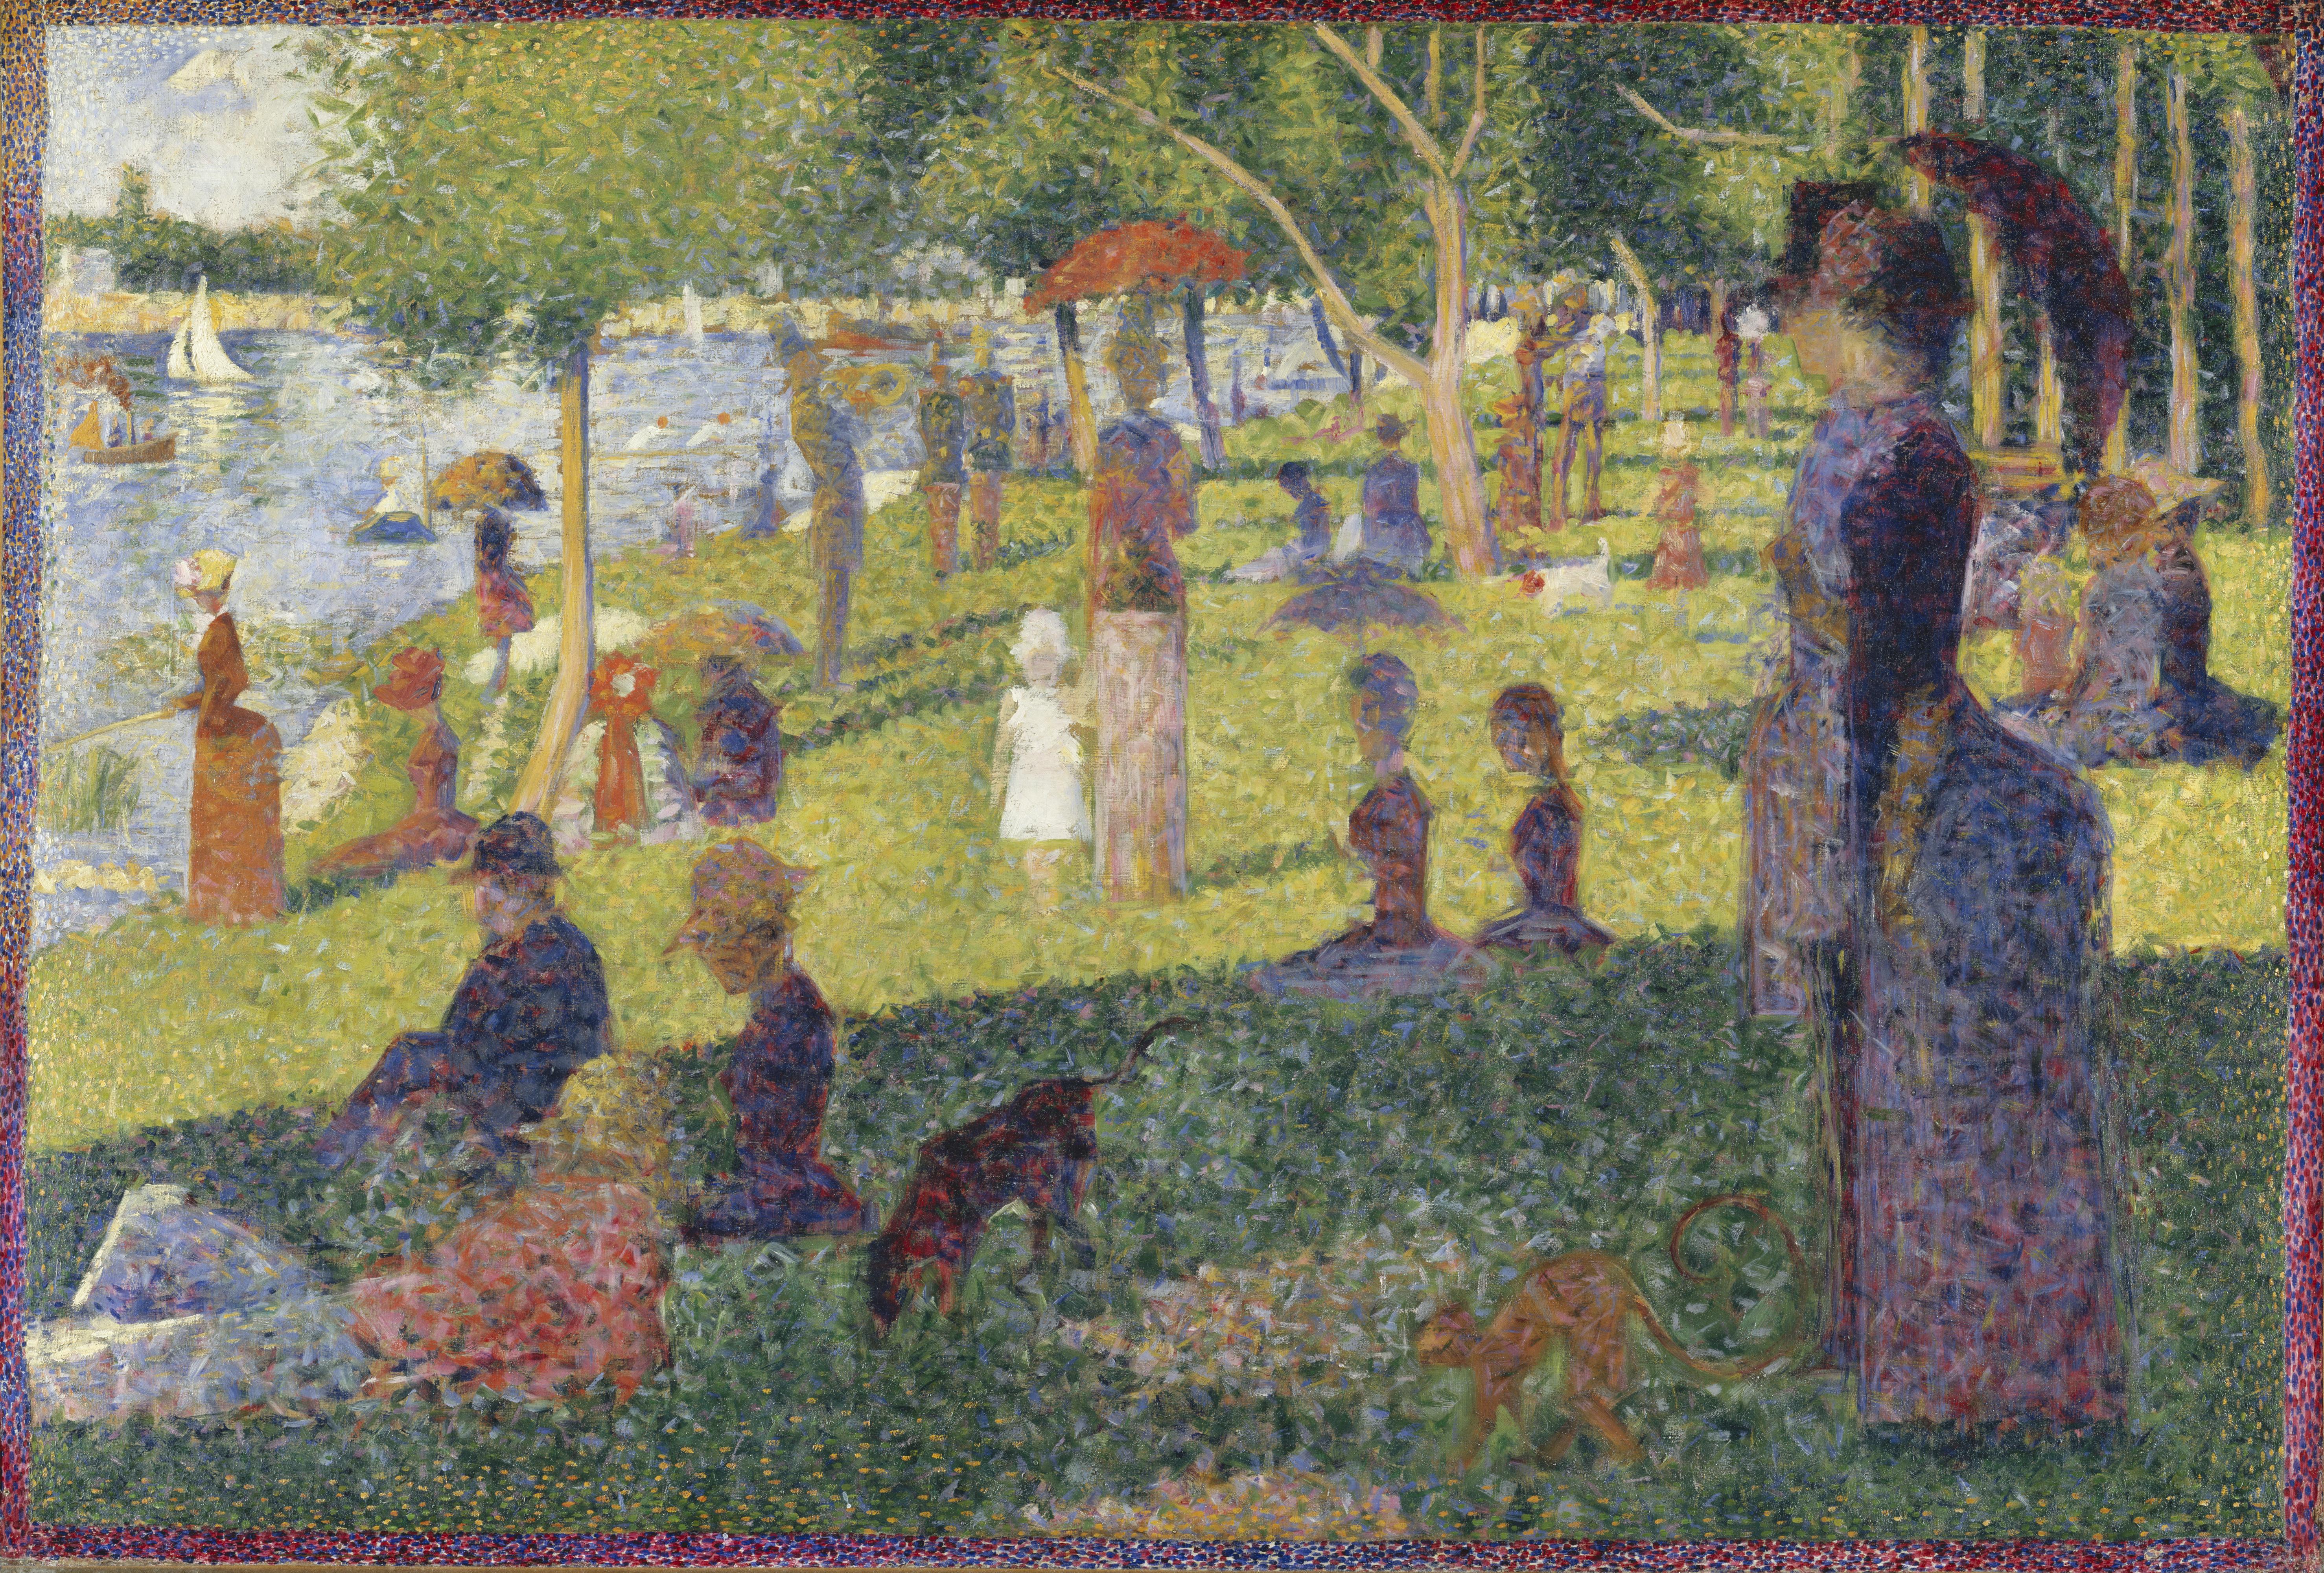 Tanulmány a Vasárnap délután a La Grande Jatte szigetén című műhöz by Georges Seurat - 1884 - 70,5 x 104,1 cm 